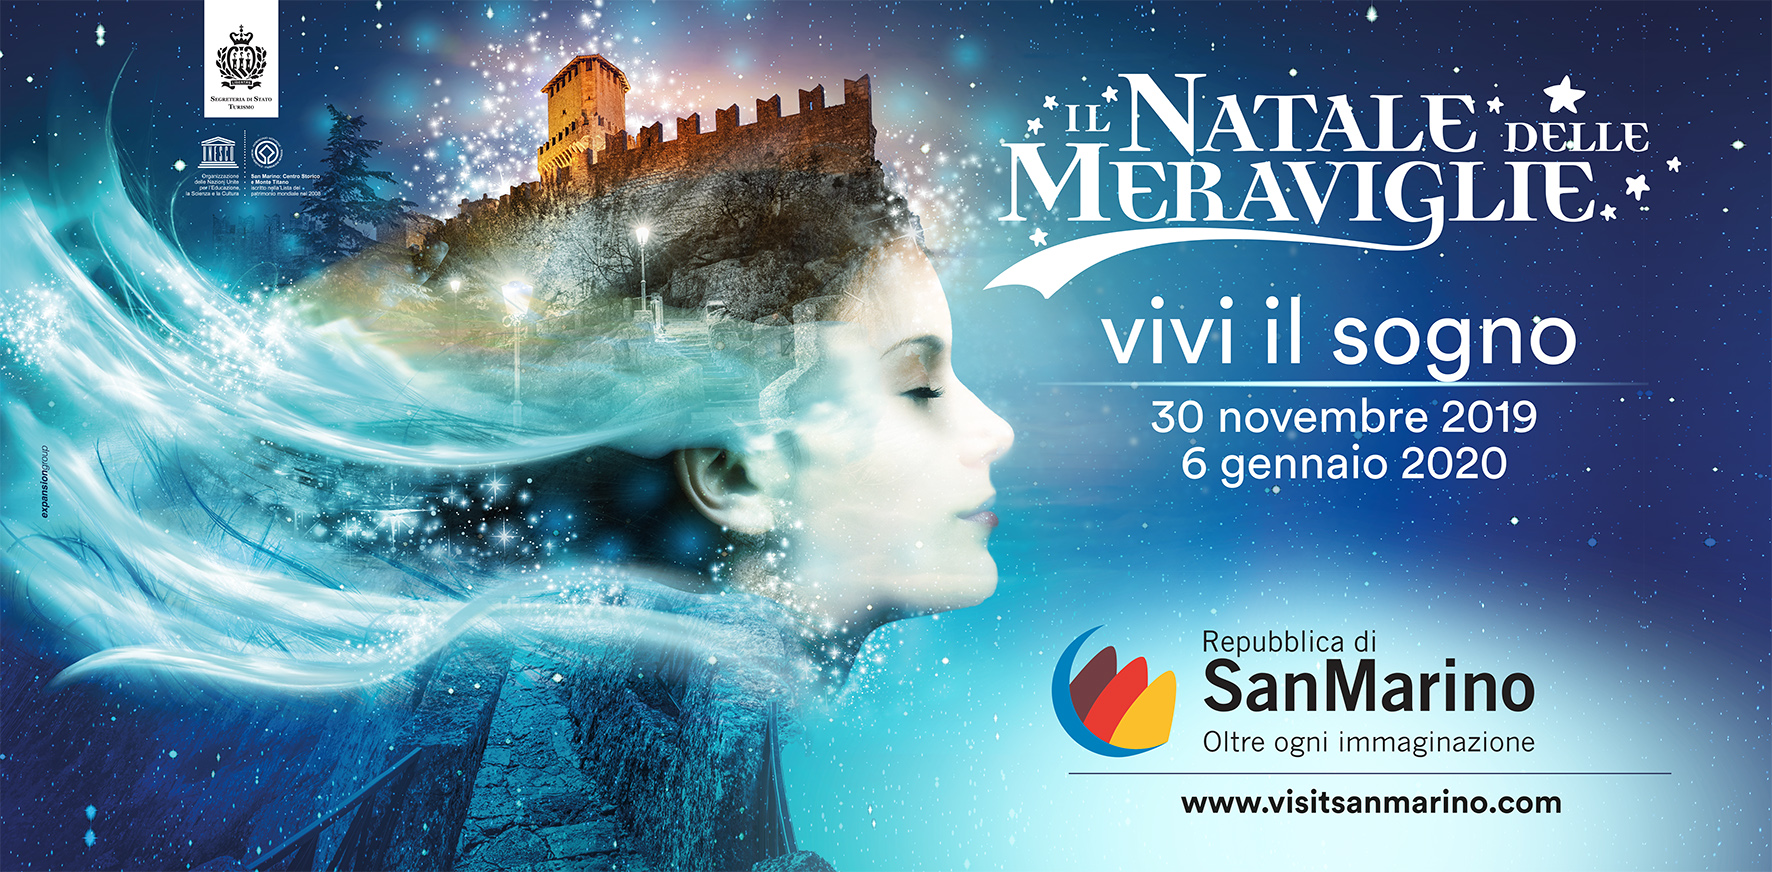 Il Natale delle Meraviglie di San Marino è un sogno da vivere con Expansion Group.